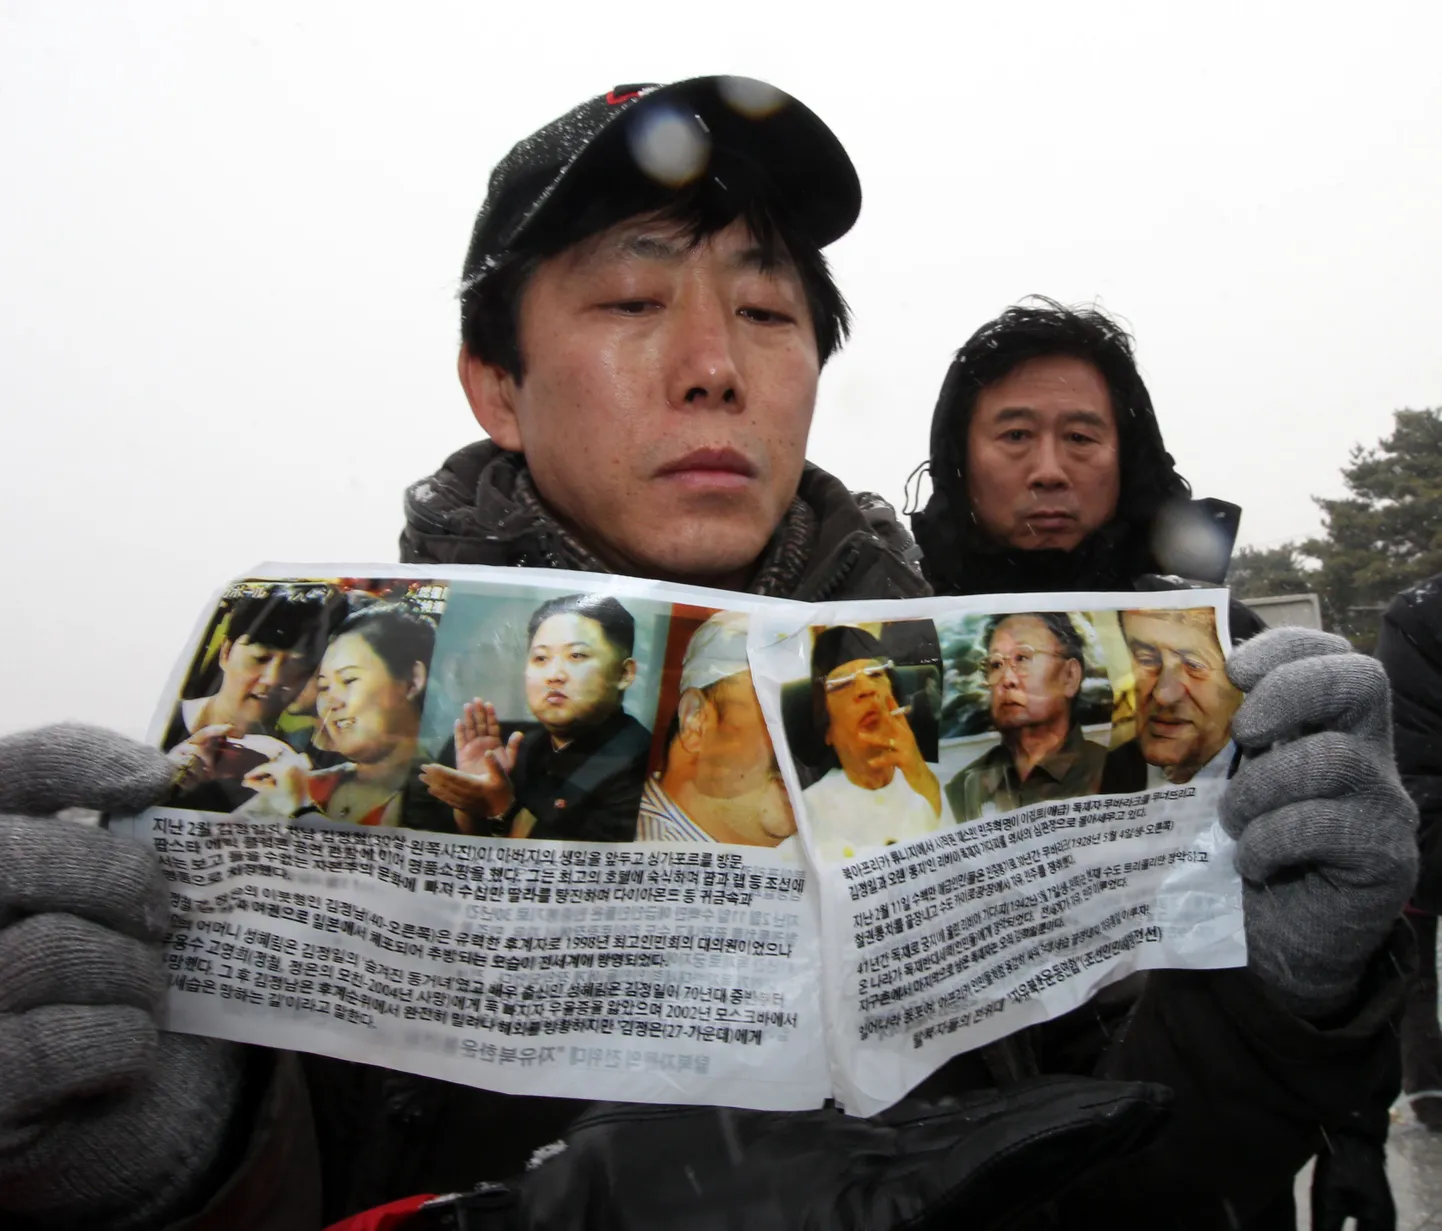 Endine põhjakorealane ja inimõigusaktivist Park Sang-hak lendlehti näitamas